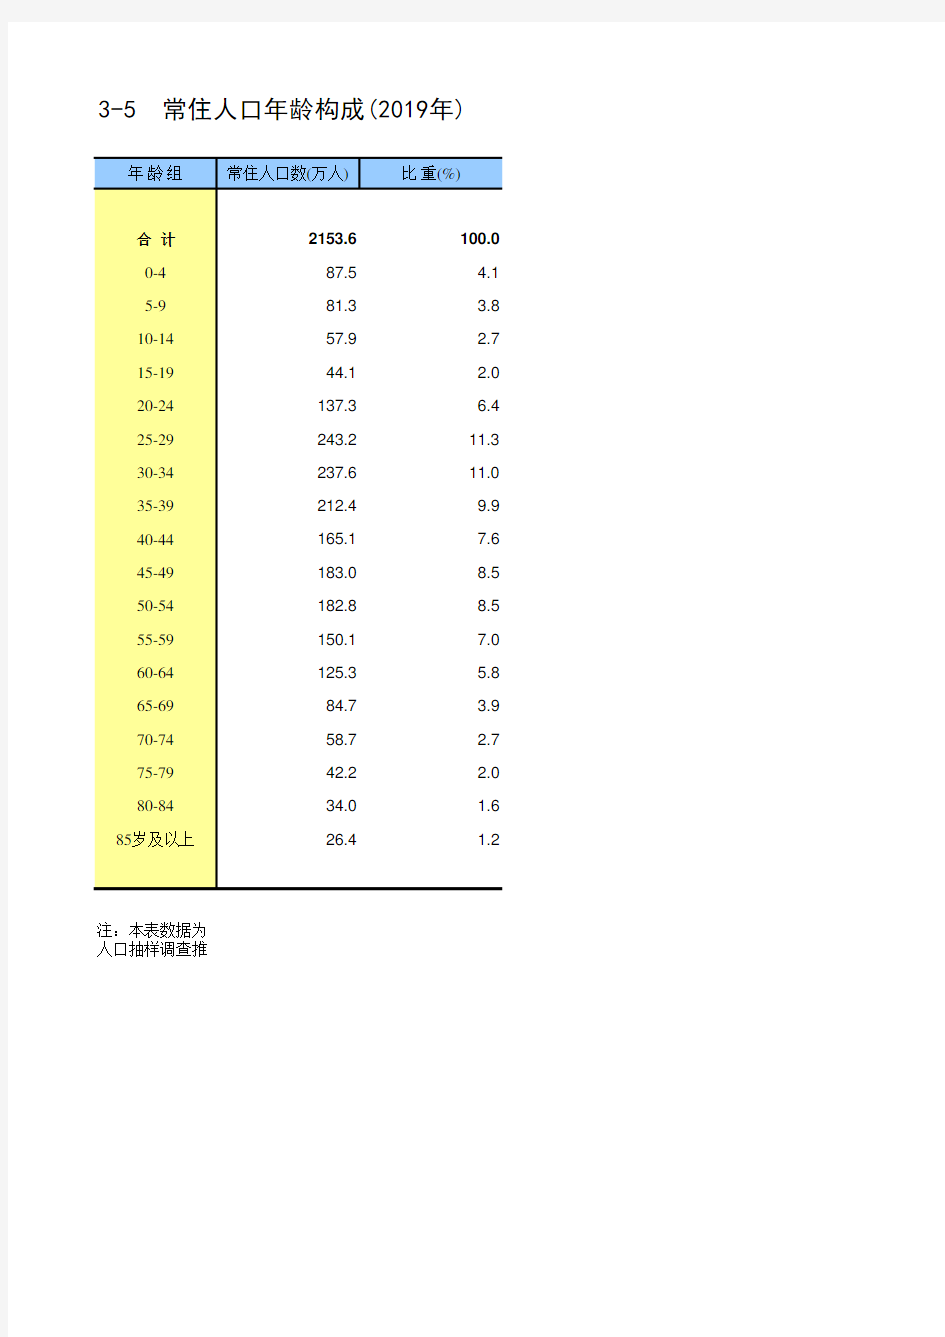 北京统计年鉴2020各区社会经济发展指标：常住人口年龄构成(2019年)